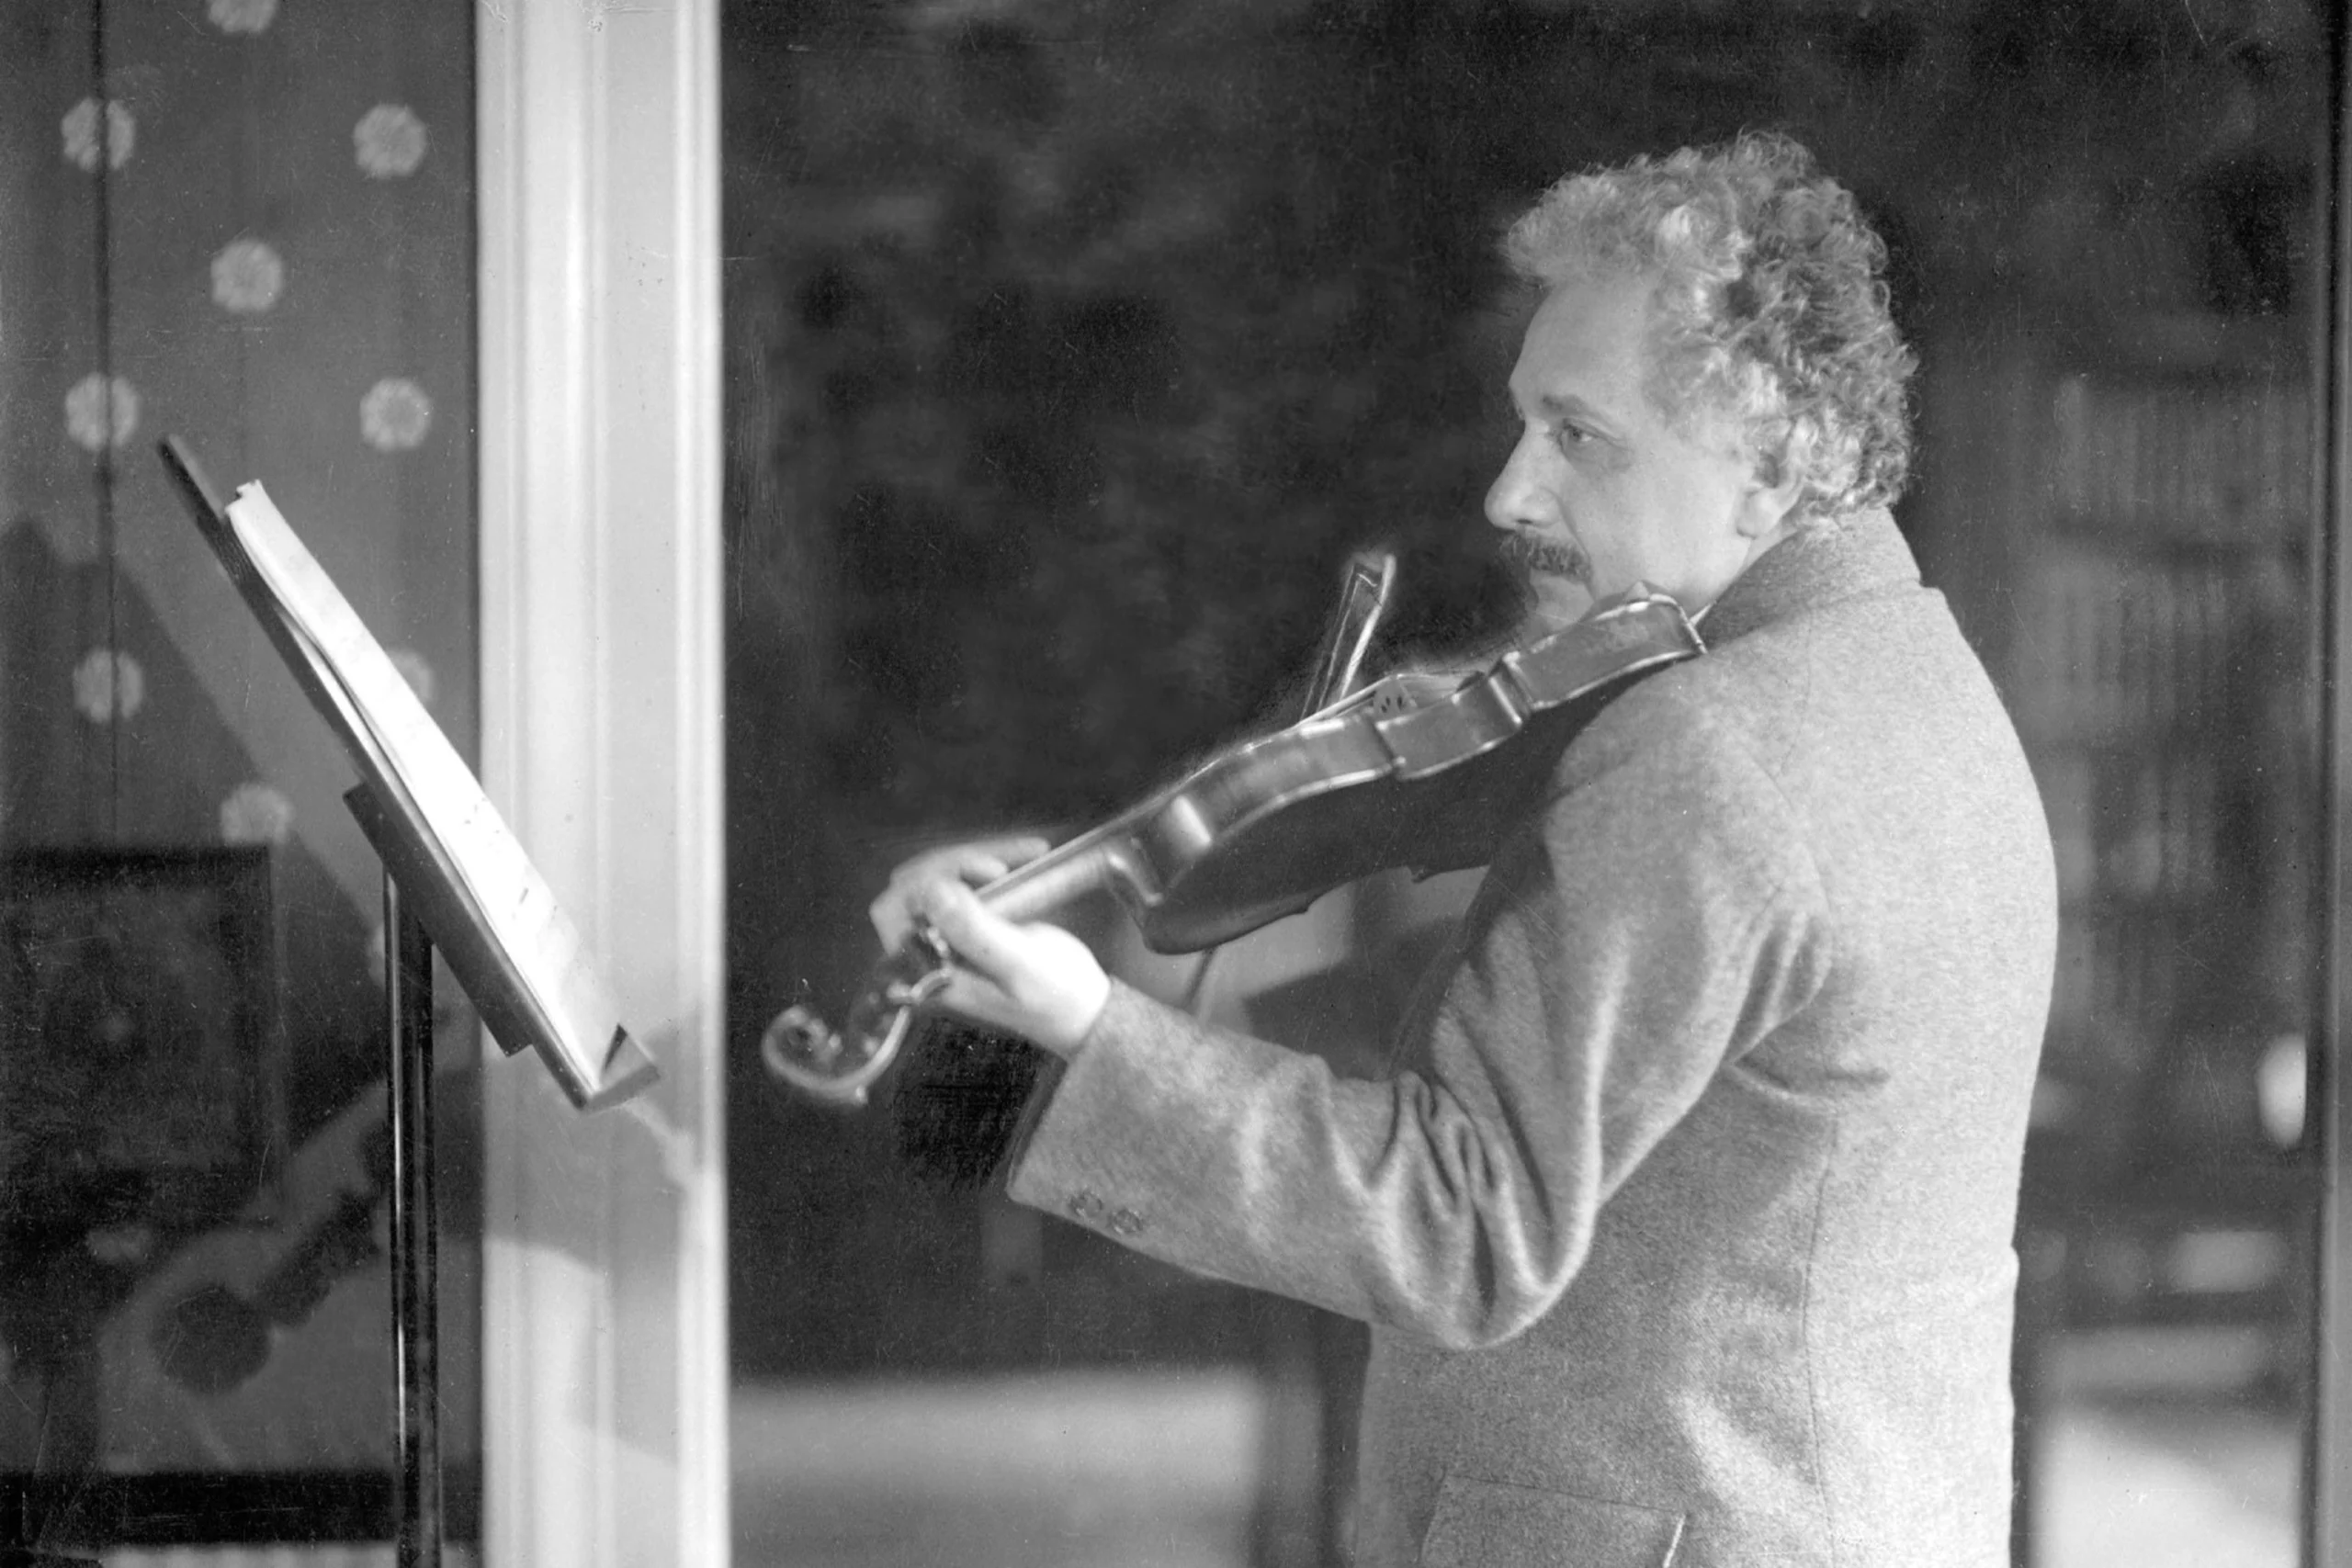 albert einstein violin recording - Did Albert Einstein listen to music while working